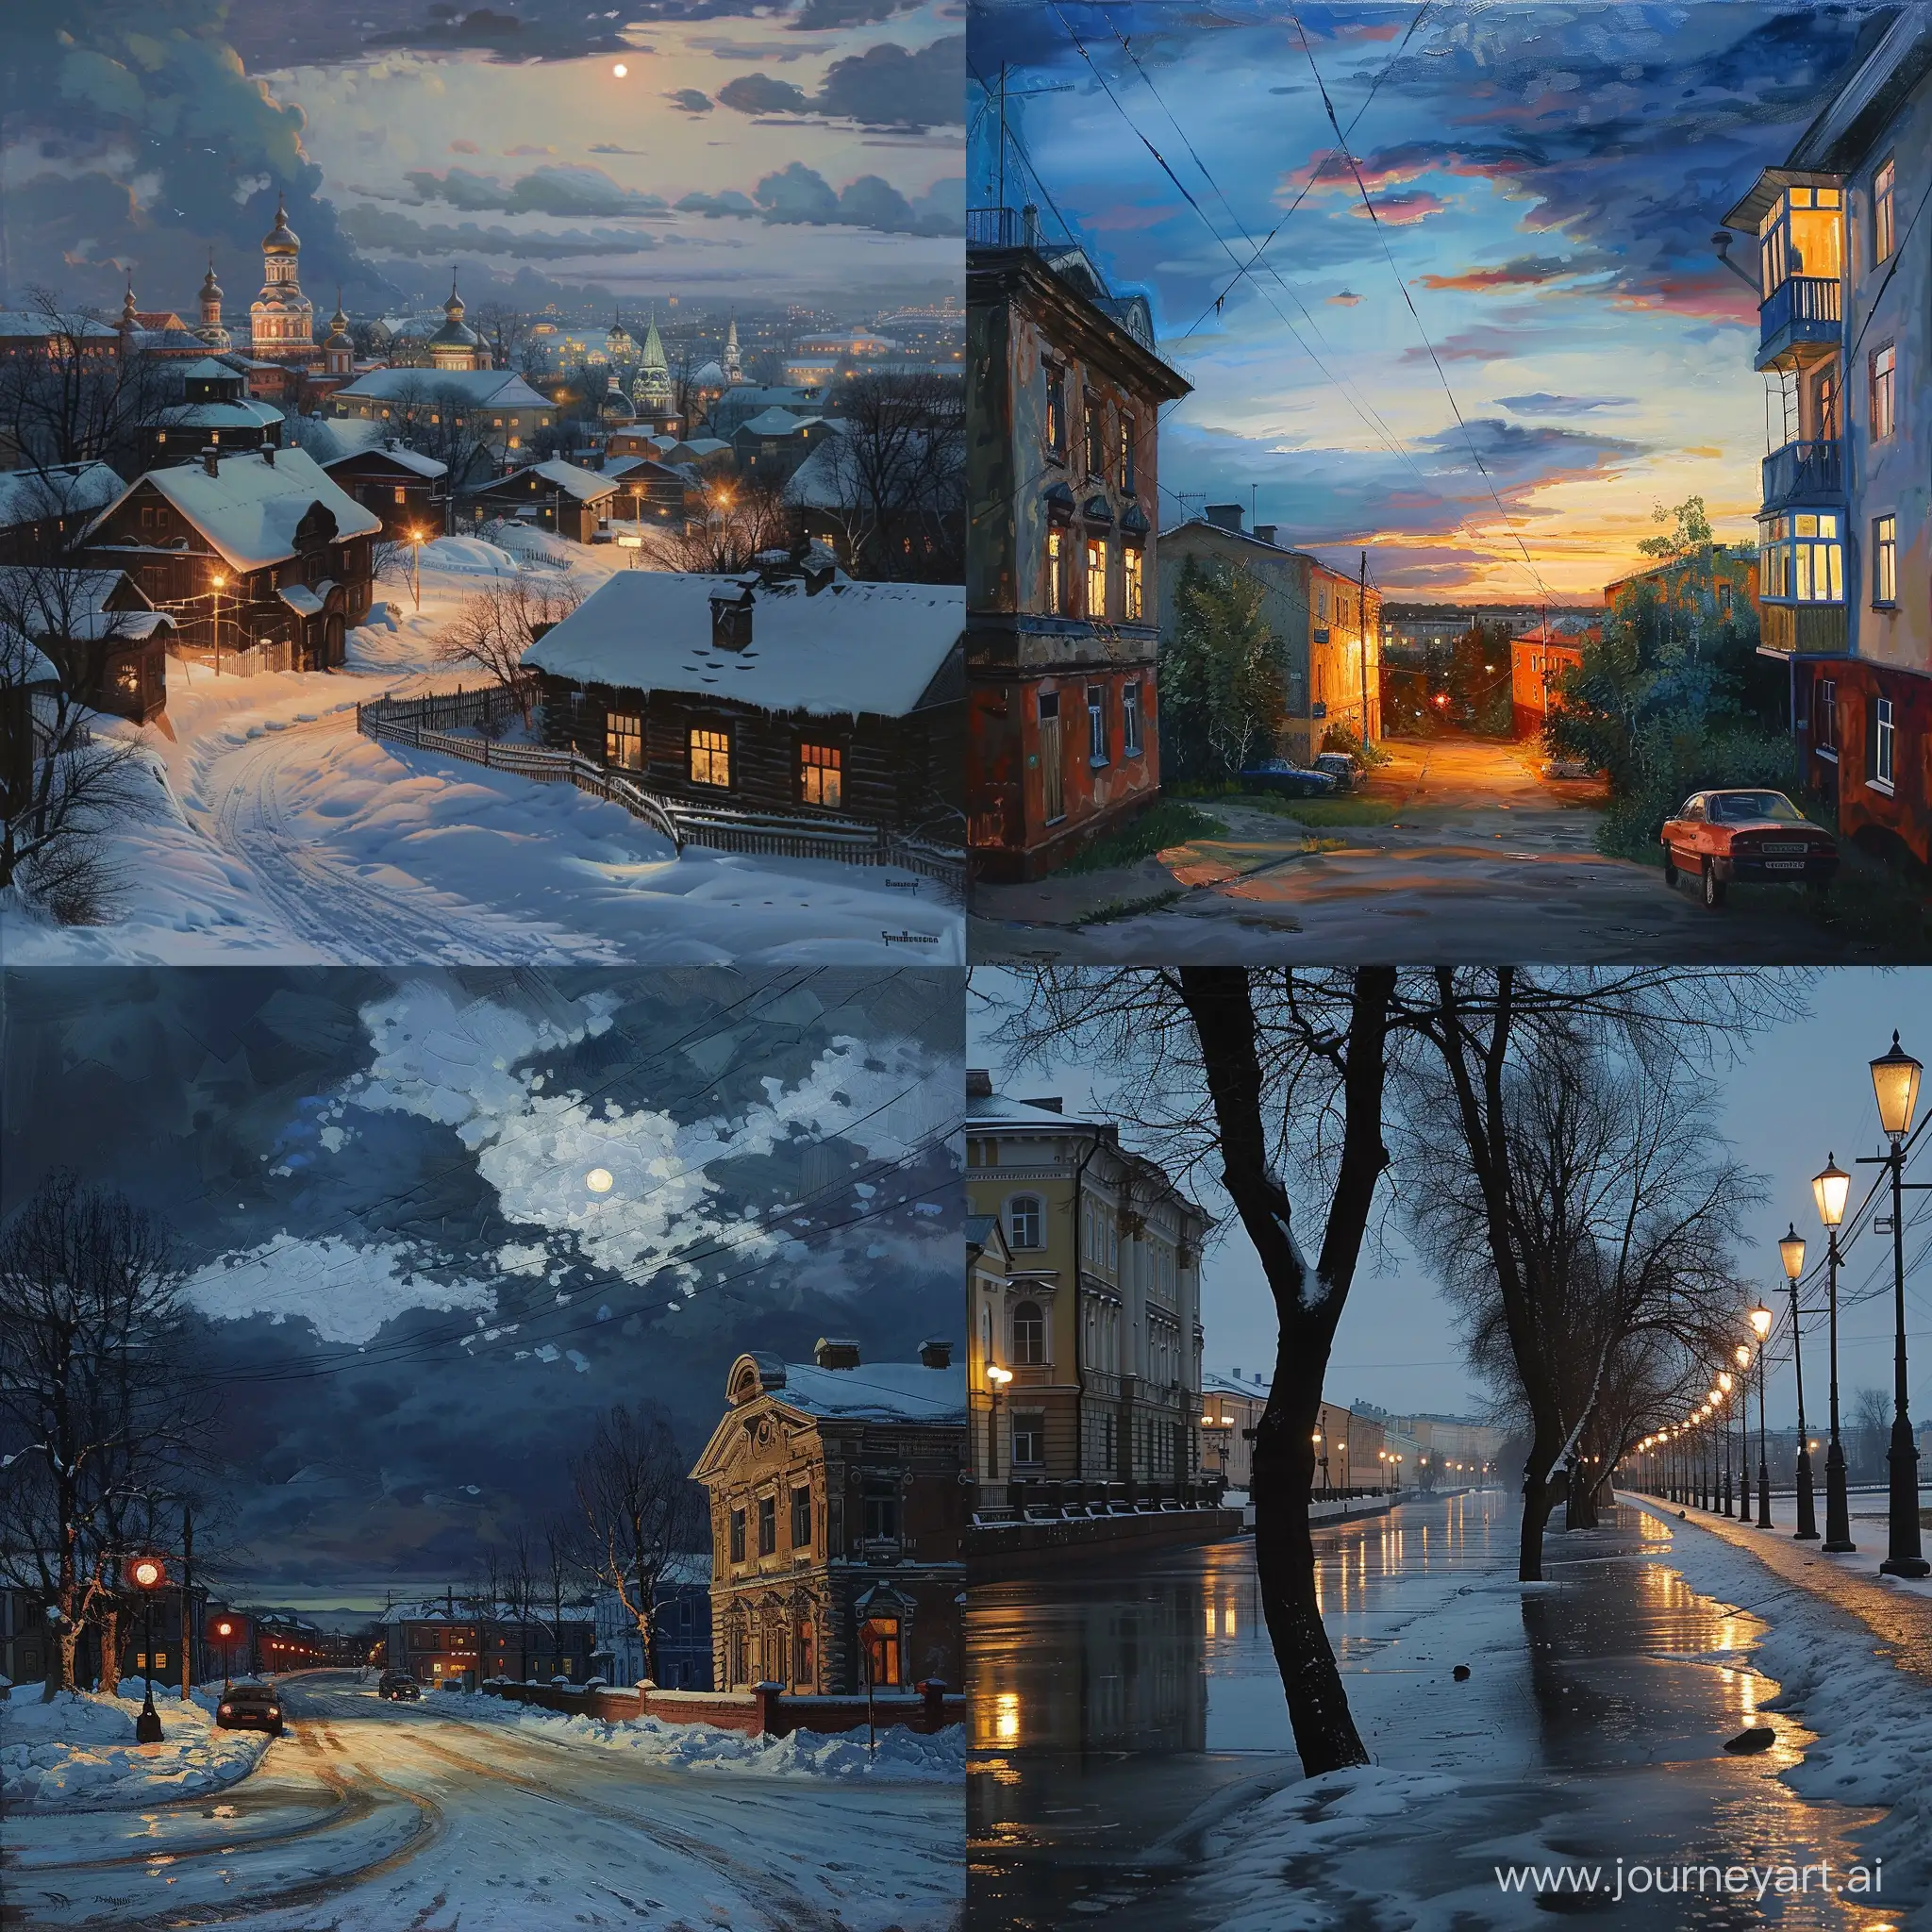 Twilight-in-Severodvinsk-Peaceful-Urban-Landscape-at-Dusk